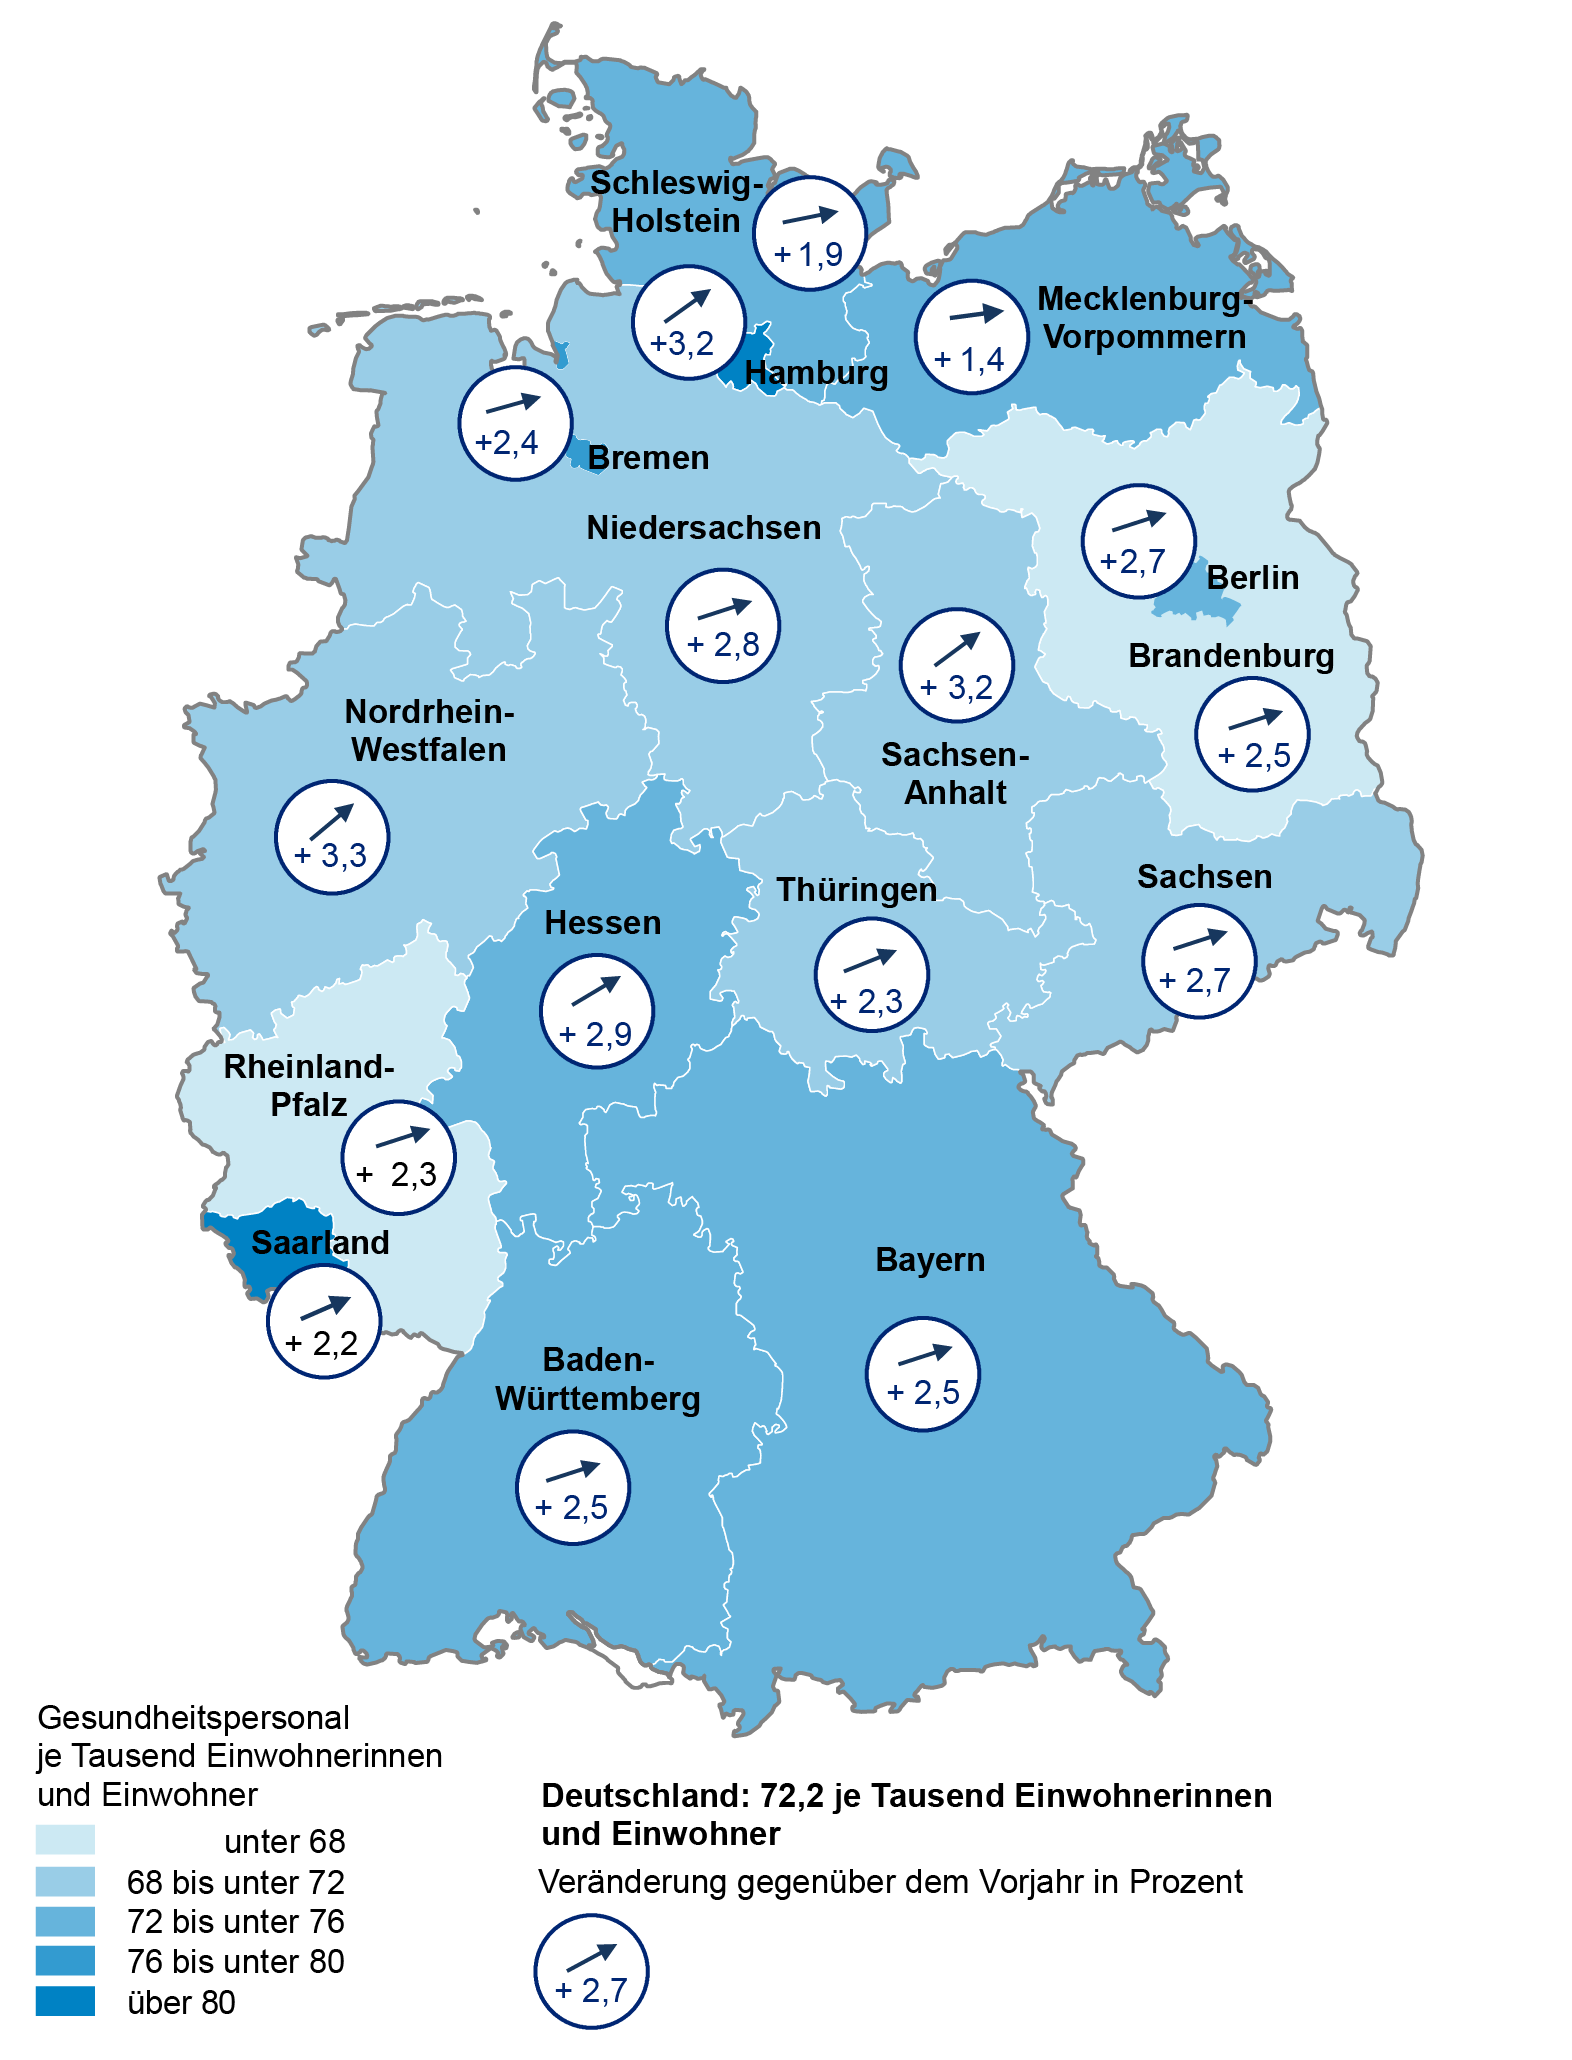 In dieser Deutschlandkarte wird das Gesundheitspersonal im Jahr 2021 bezogen auf 1000 Einwohnerinnen und Einwohner sowie die Veränderung gegenüber dem Vorjahr dargestellt.